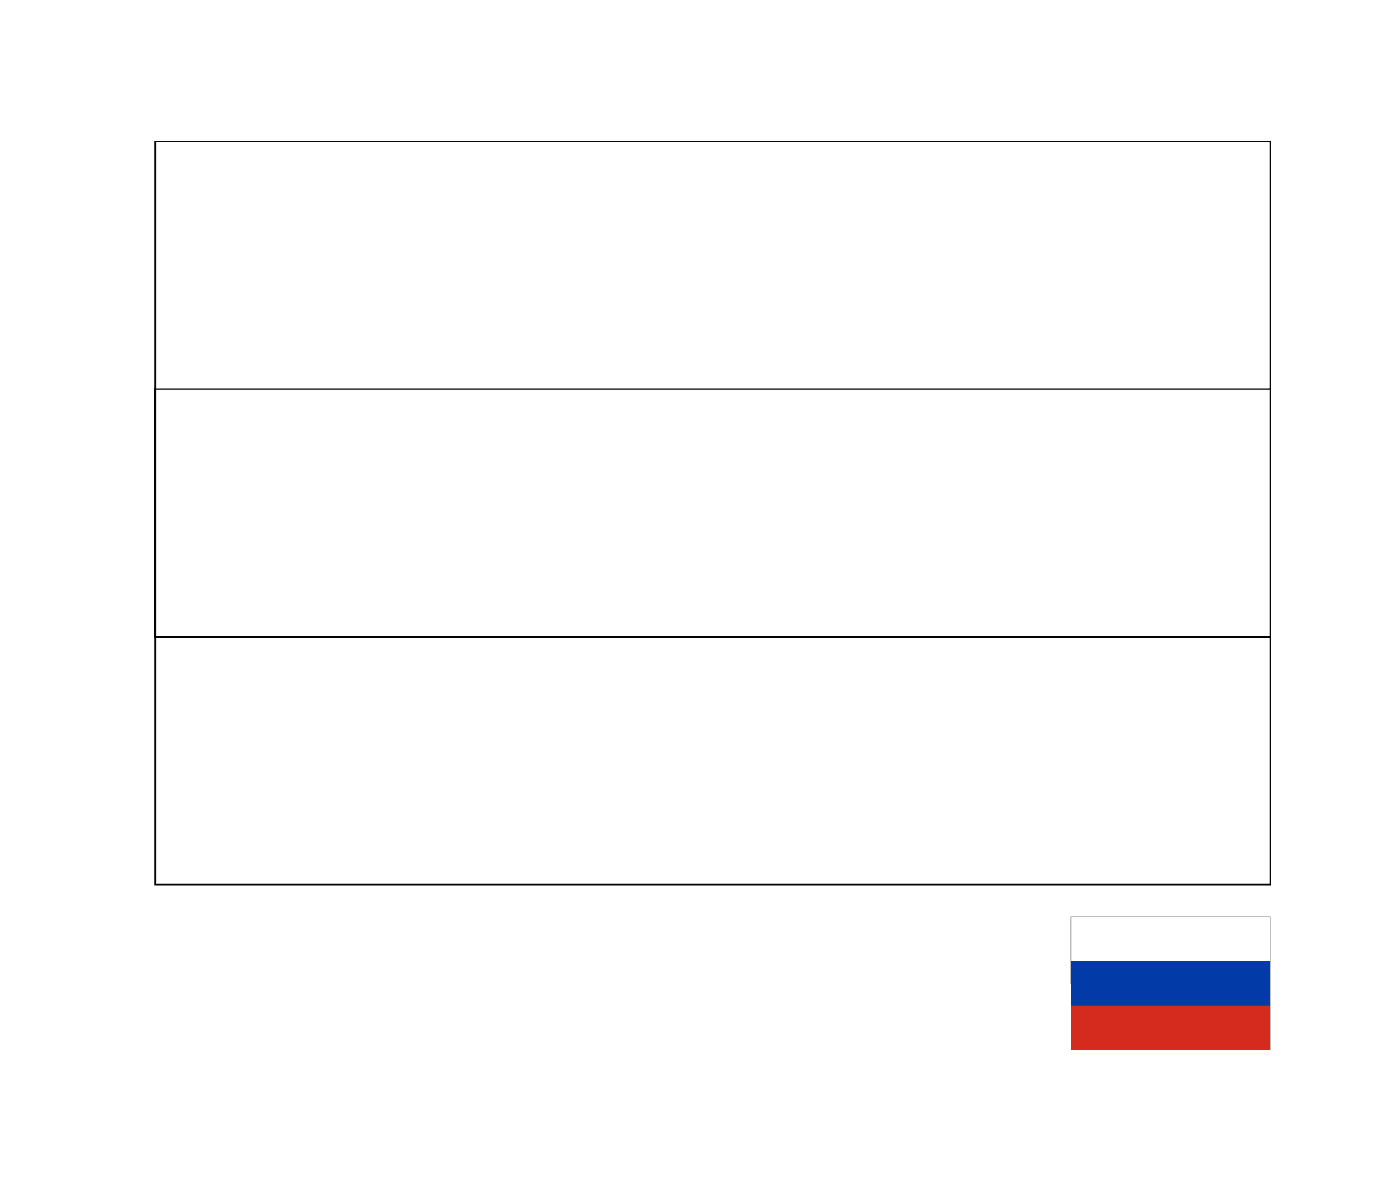  علم روسيا 